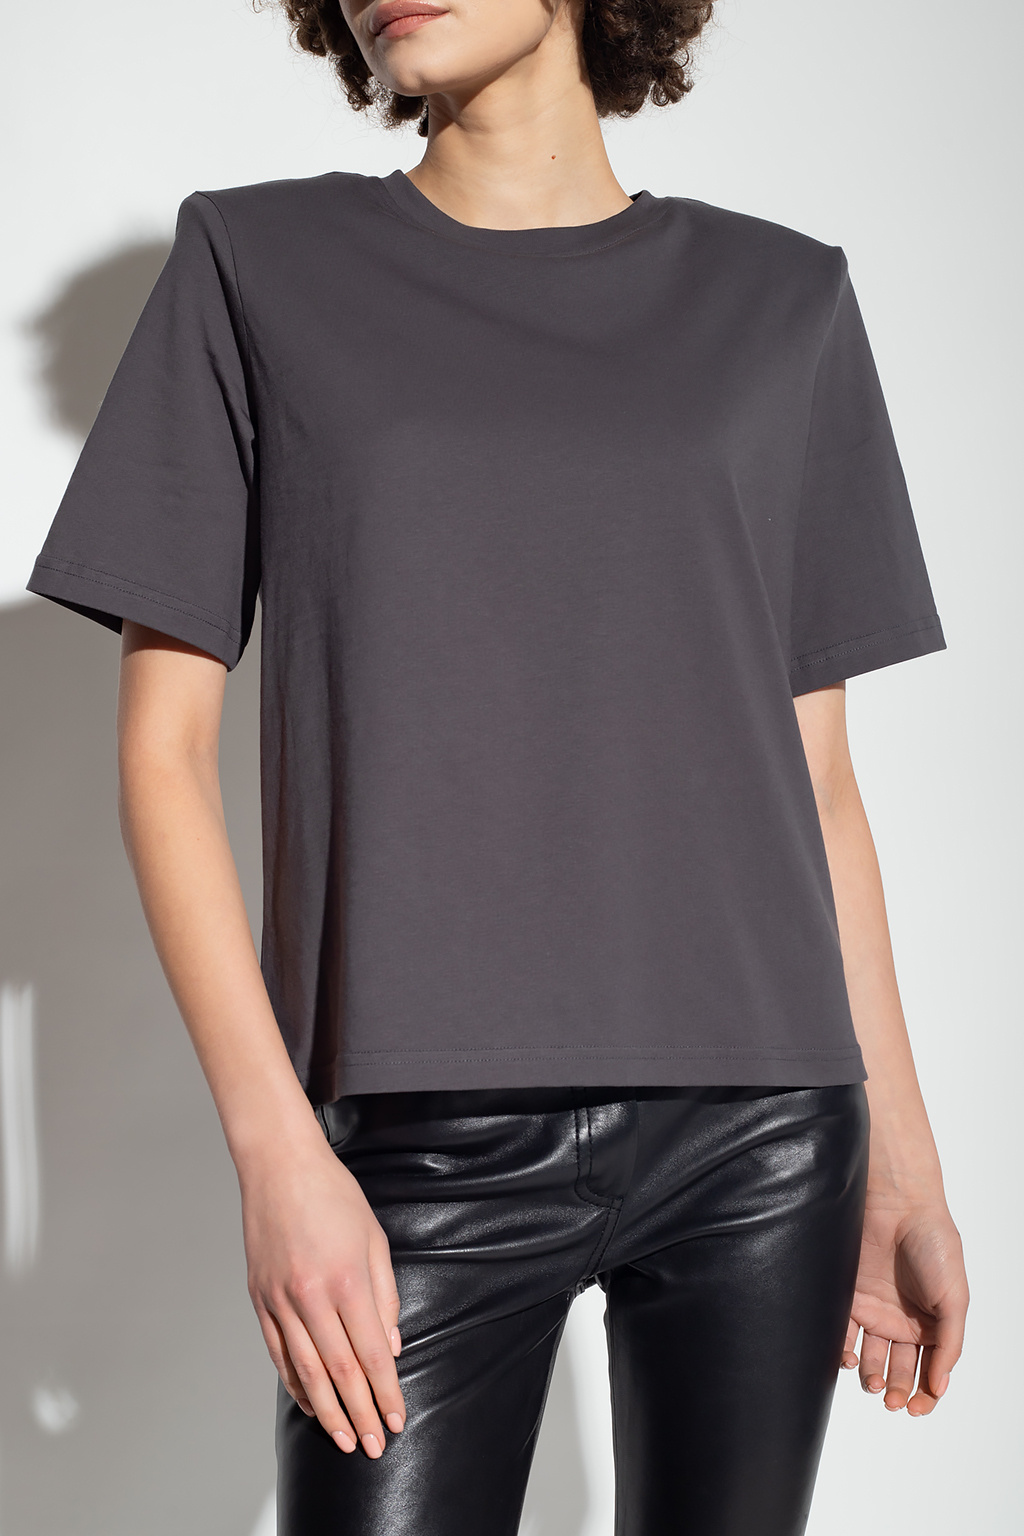 Birgitte Herskind ‘Jackson’ T-shirt with padded shoulders